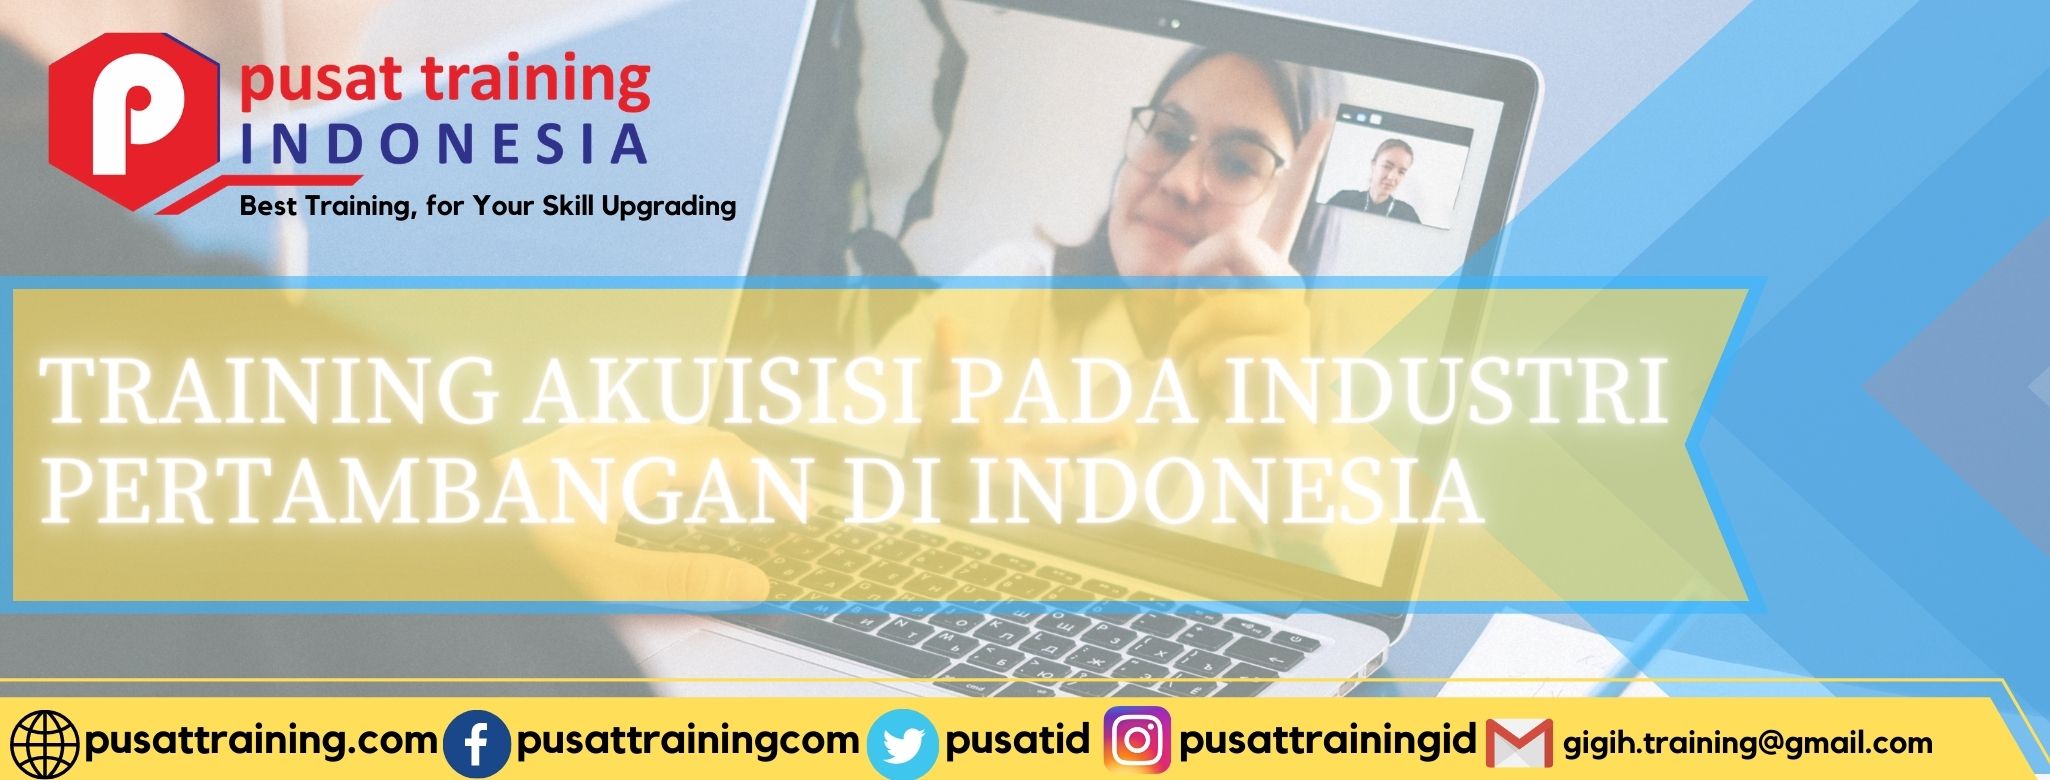 pelatihan-akuisisi-pada-industri-pertambangan-di-indonesia